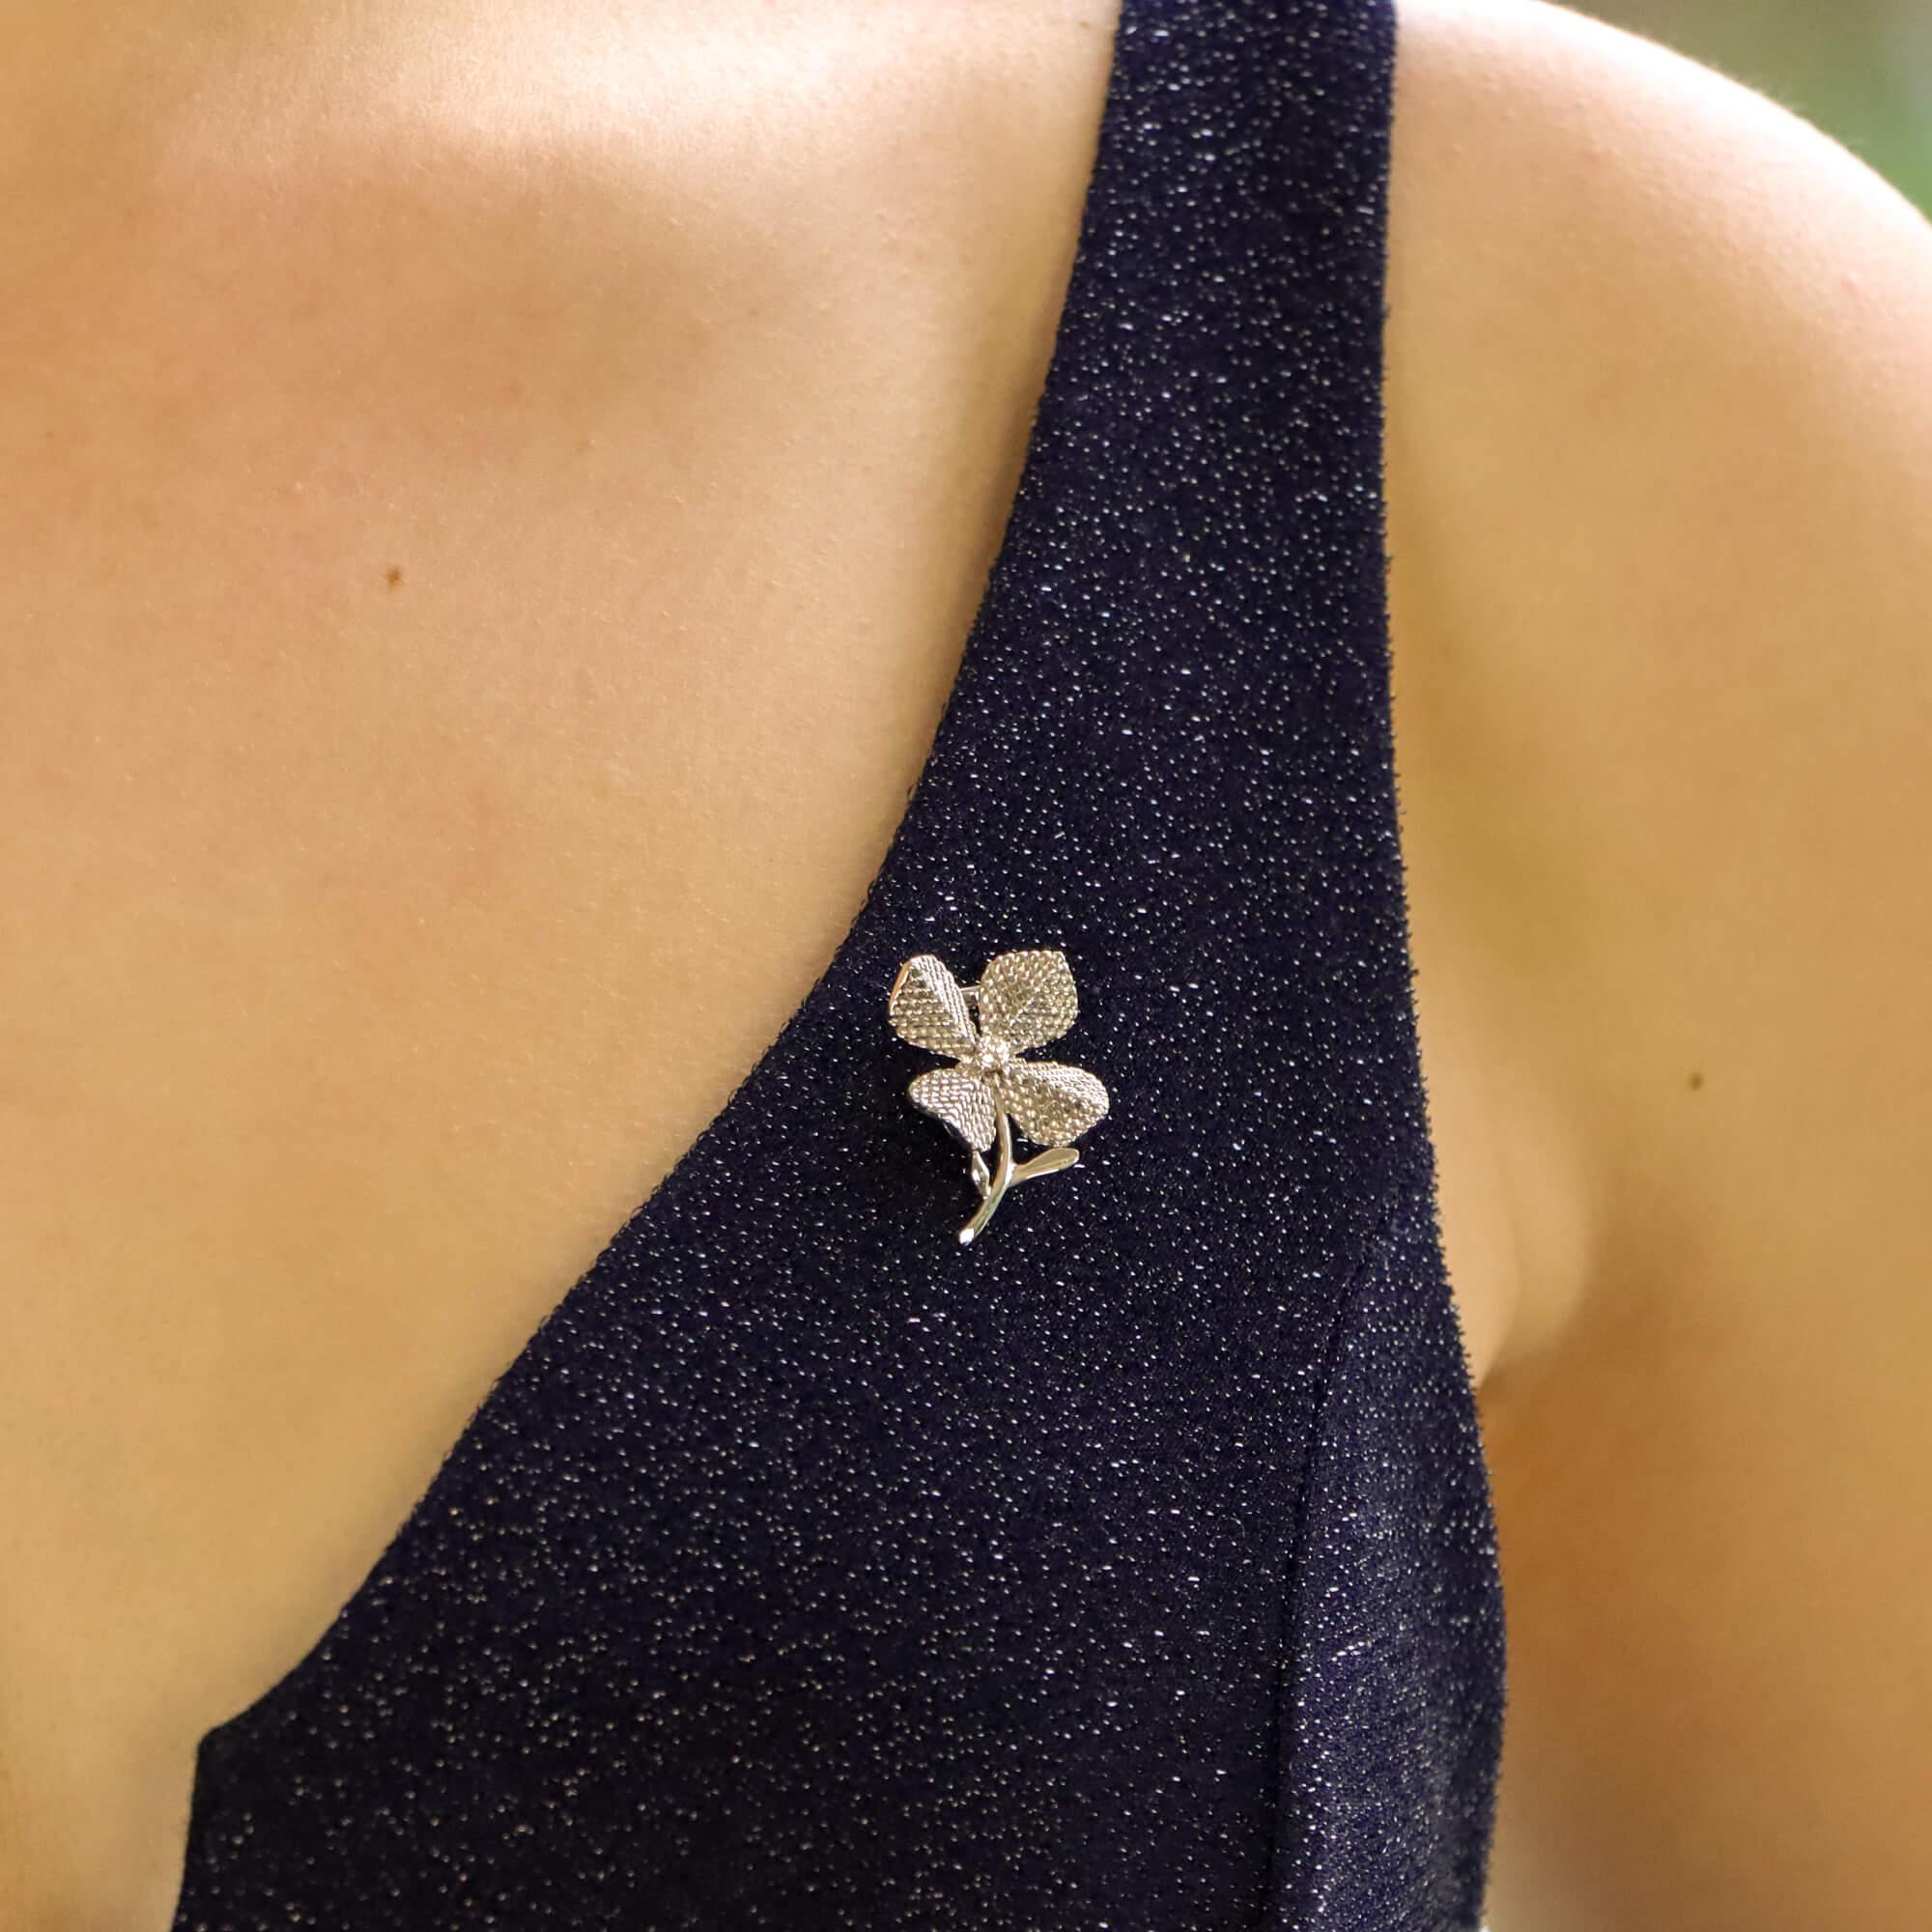 Retro Chaumet Paris Diamond Flower Brooch Set in 18 Karat White Gold